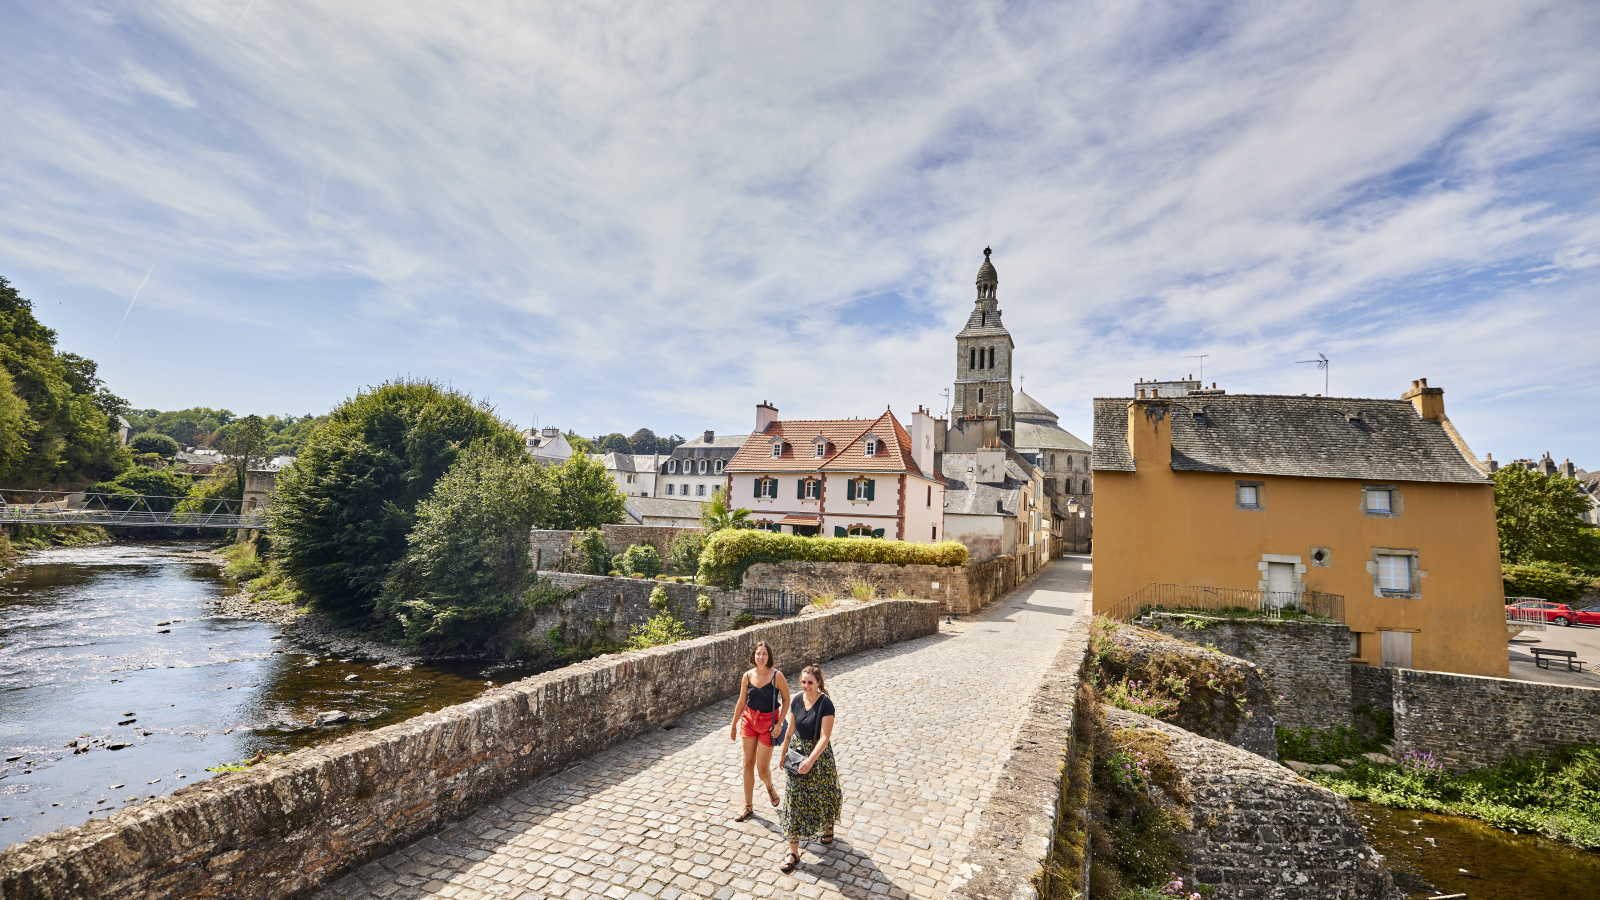 Découvrez la ville de Quimperlé et son patrimoine remarquable, en Finistère sud